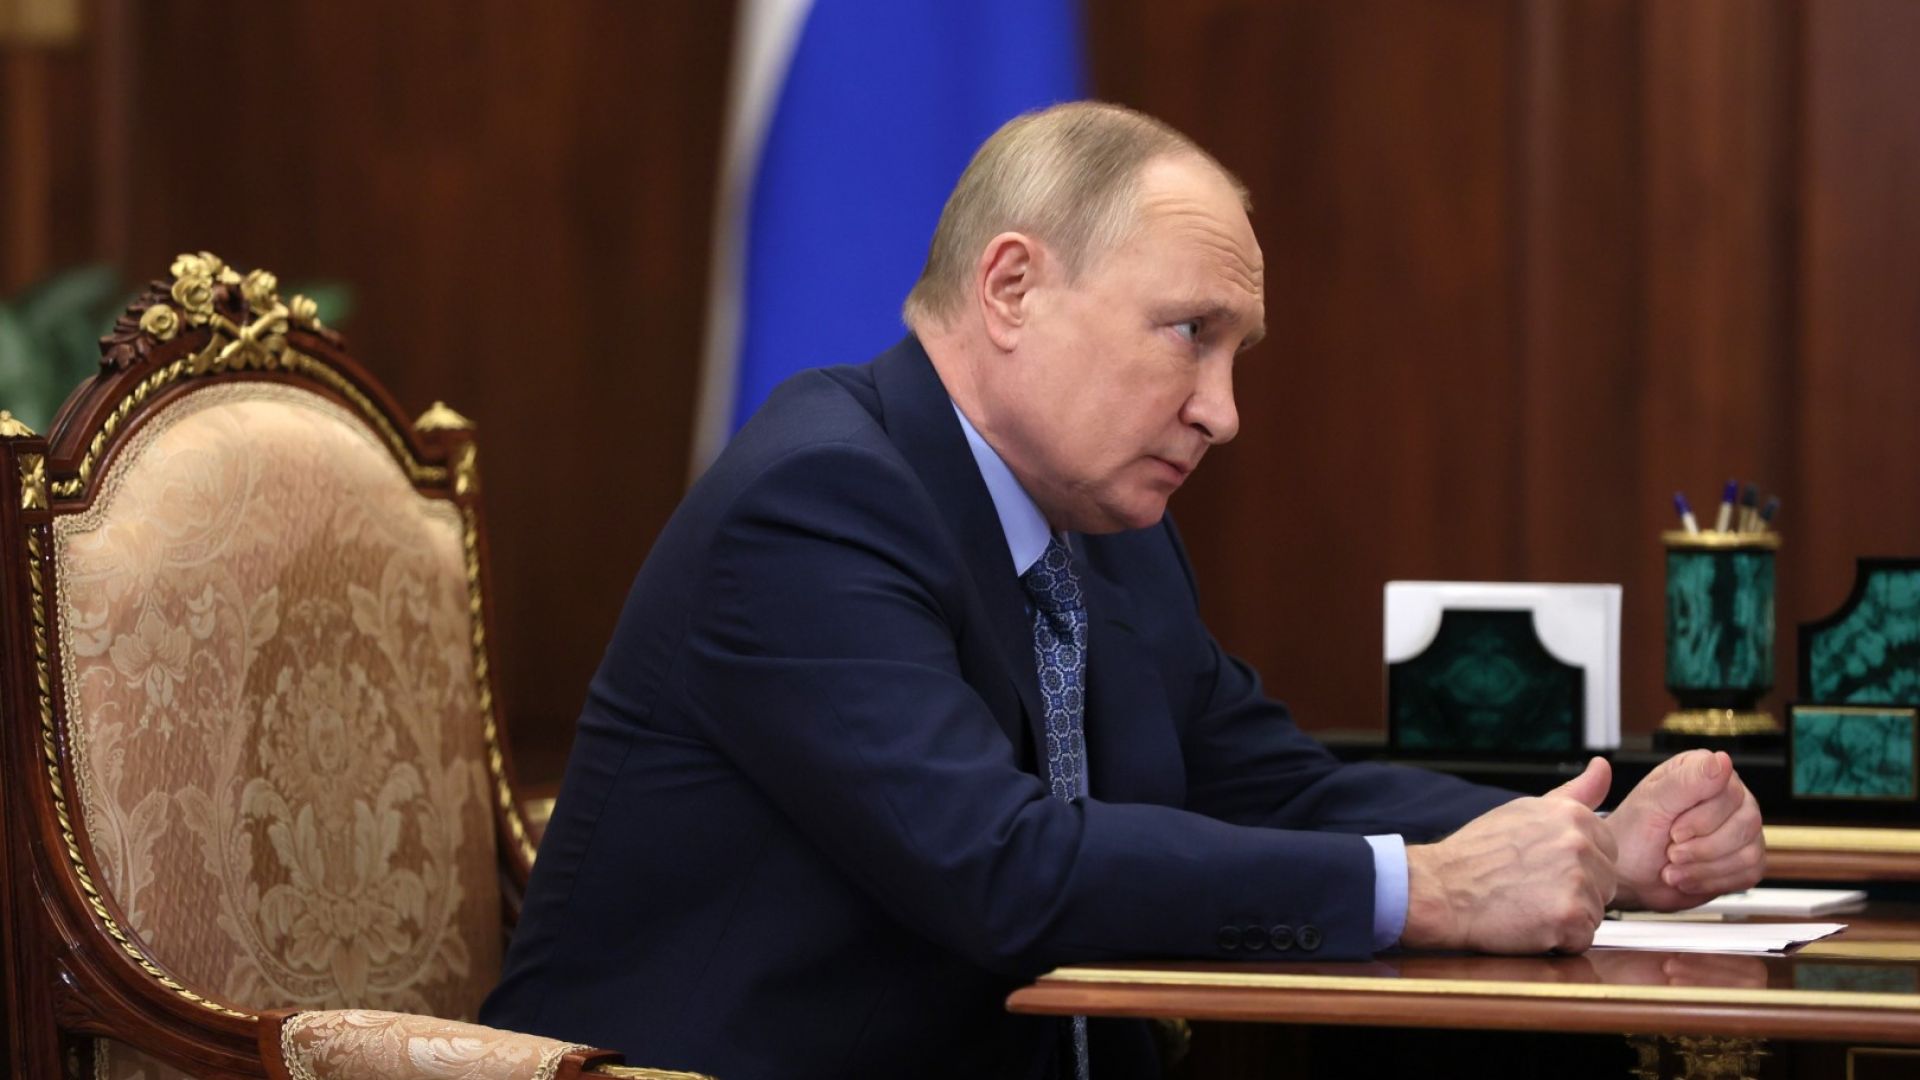 Указът на Путин: Газът ще се плаща през рублеви сметки в руски банки, иначе спира